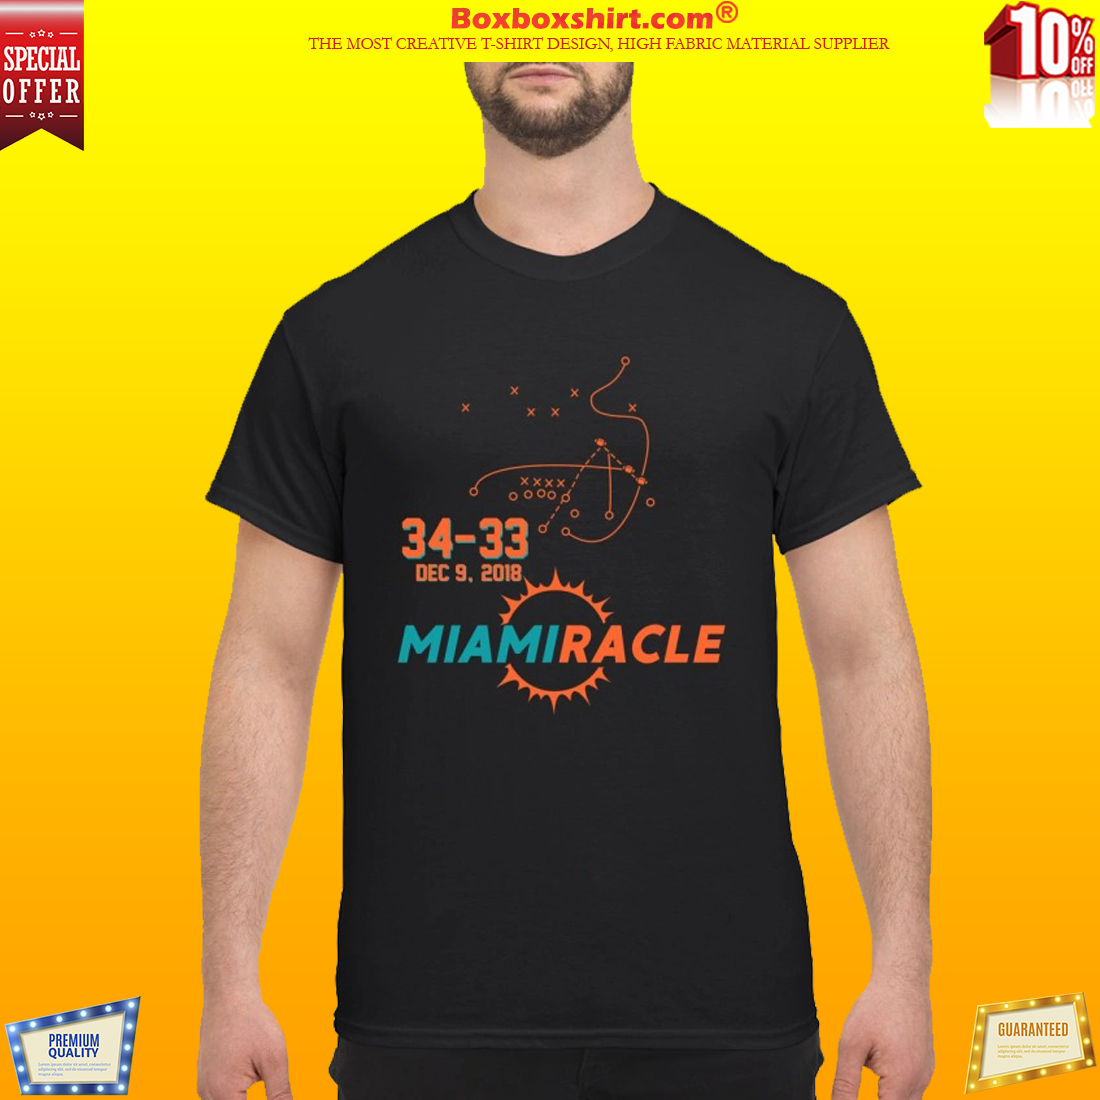 Miami miracle 34 33 shirt